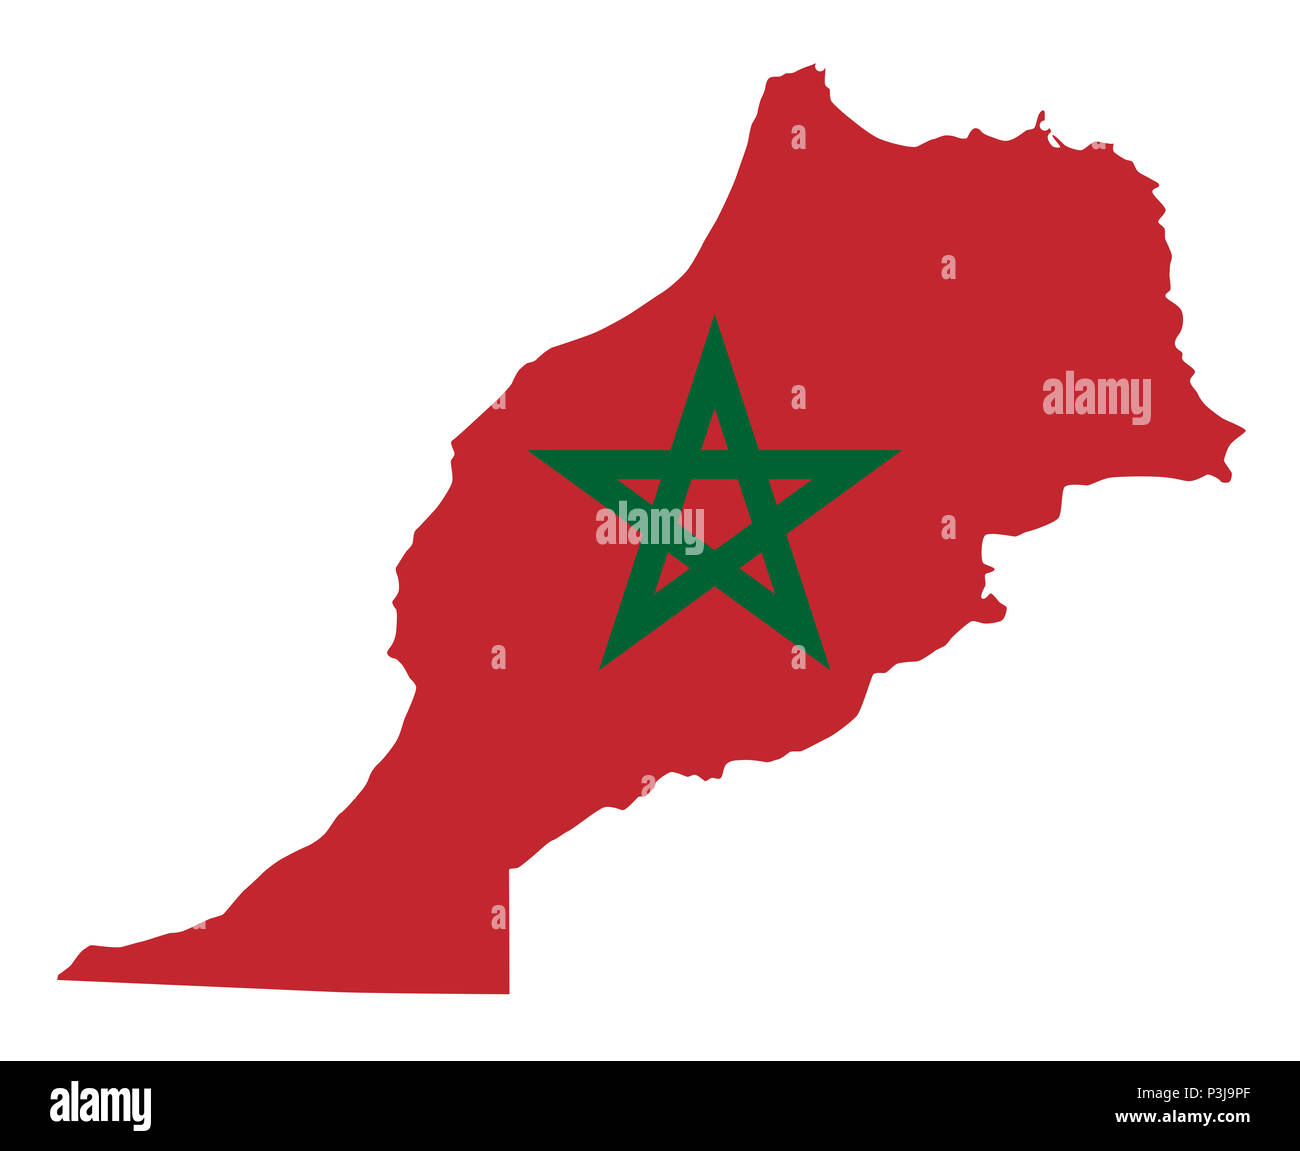 Bandiera nazionale del Marocco nel paese silhouette. Stato marocchino ensign. Campo rosso e verde pentacolo. Stato sovrano nella regione del Maghreb. Foto Stock